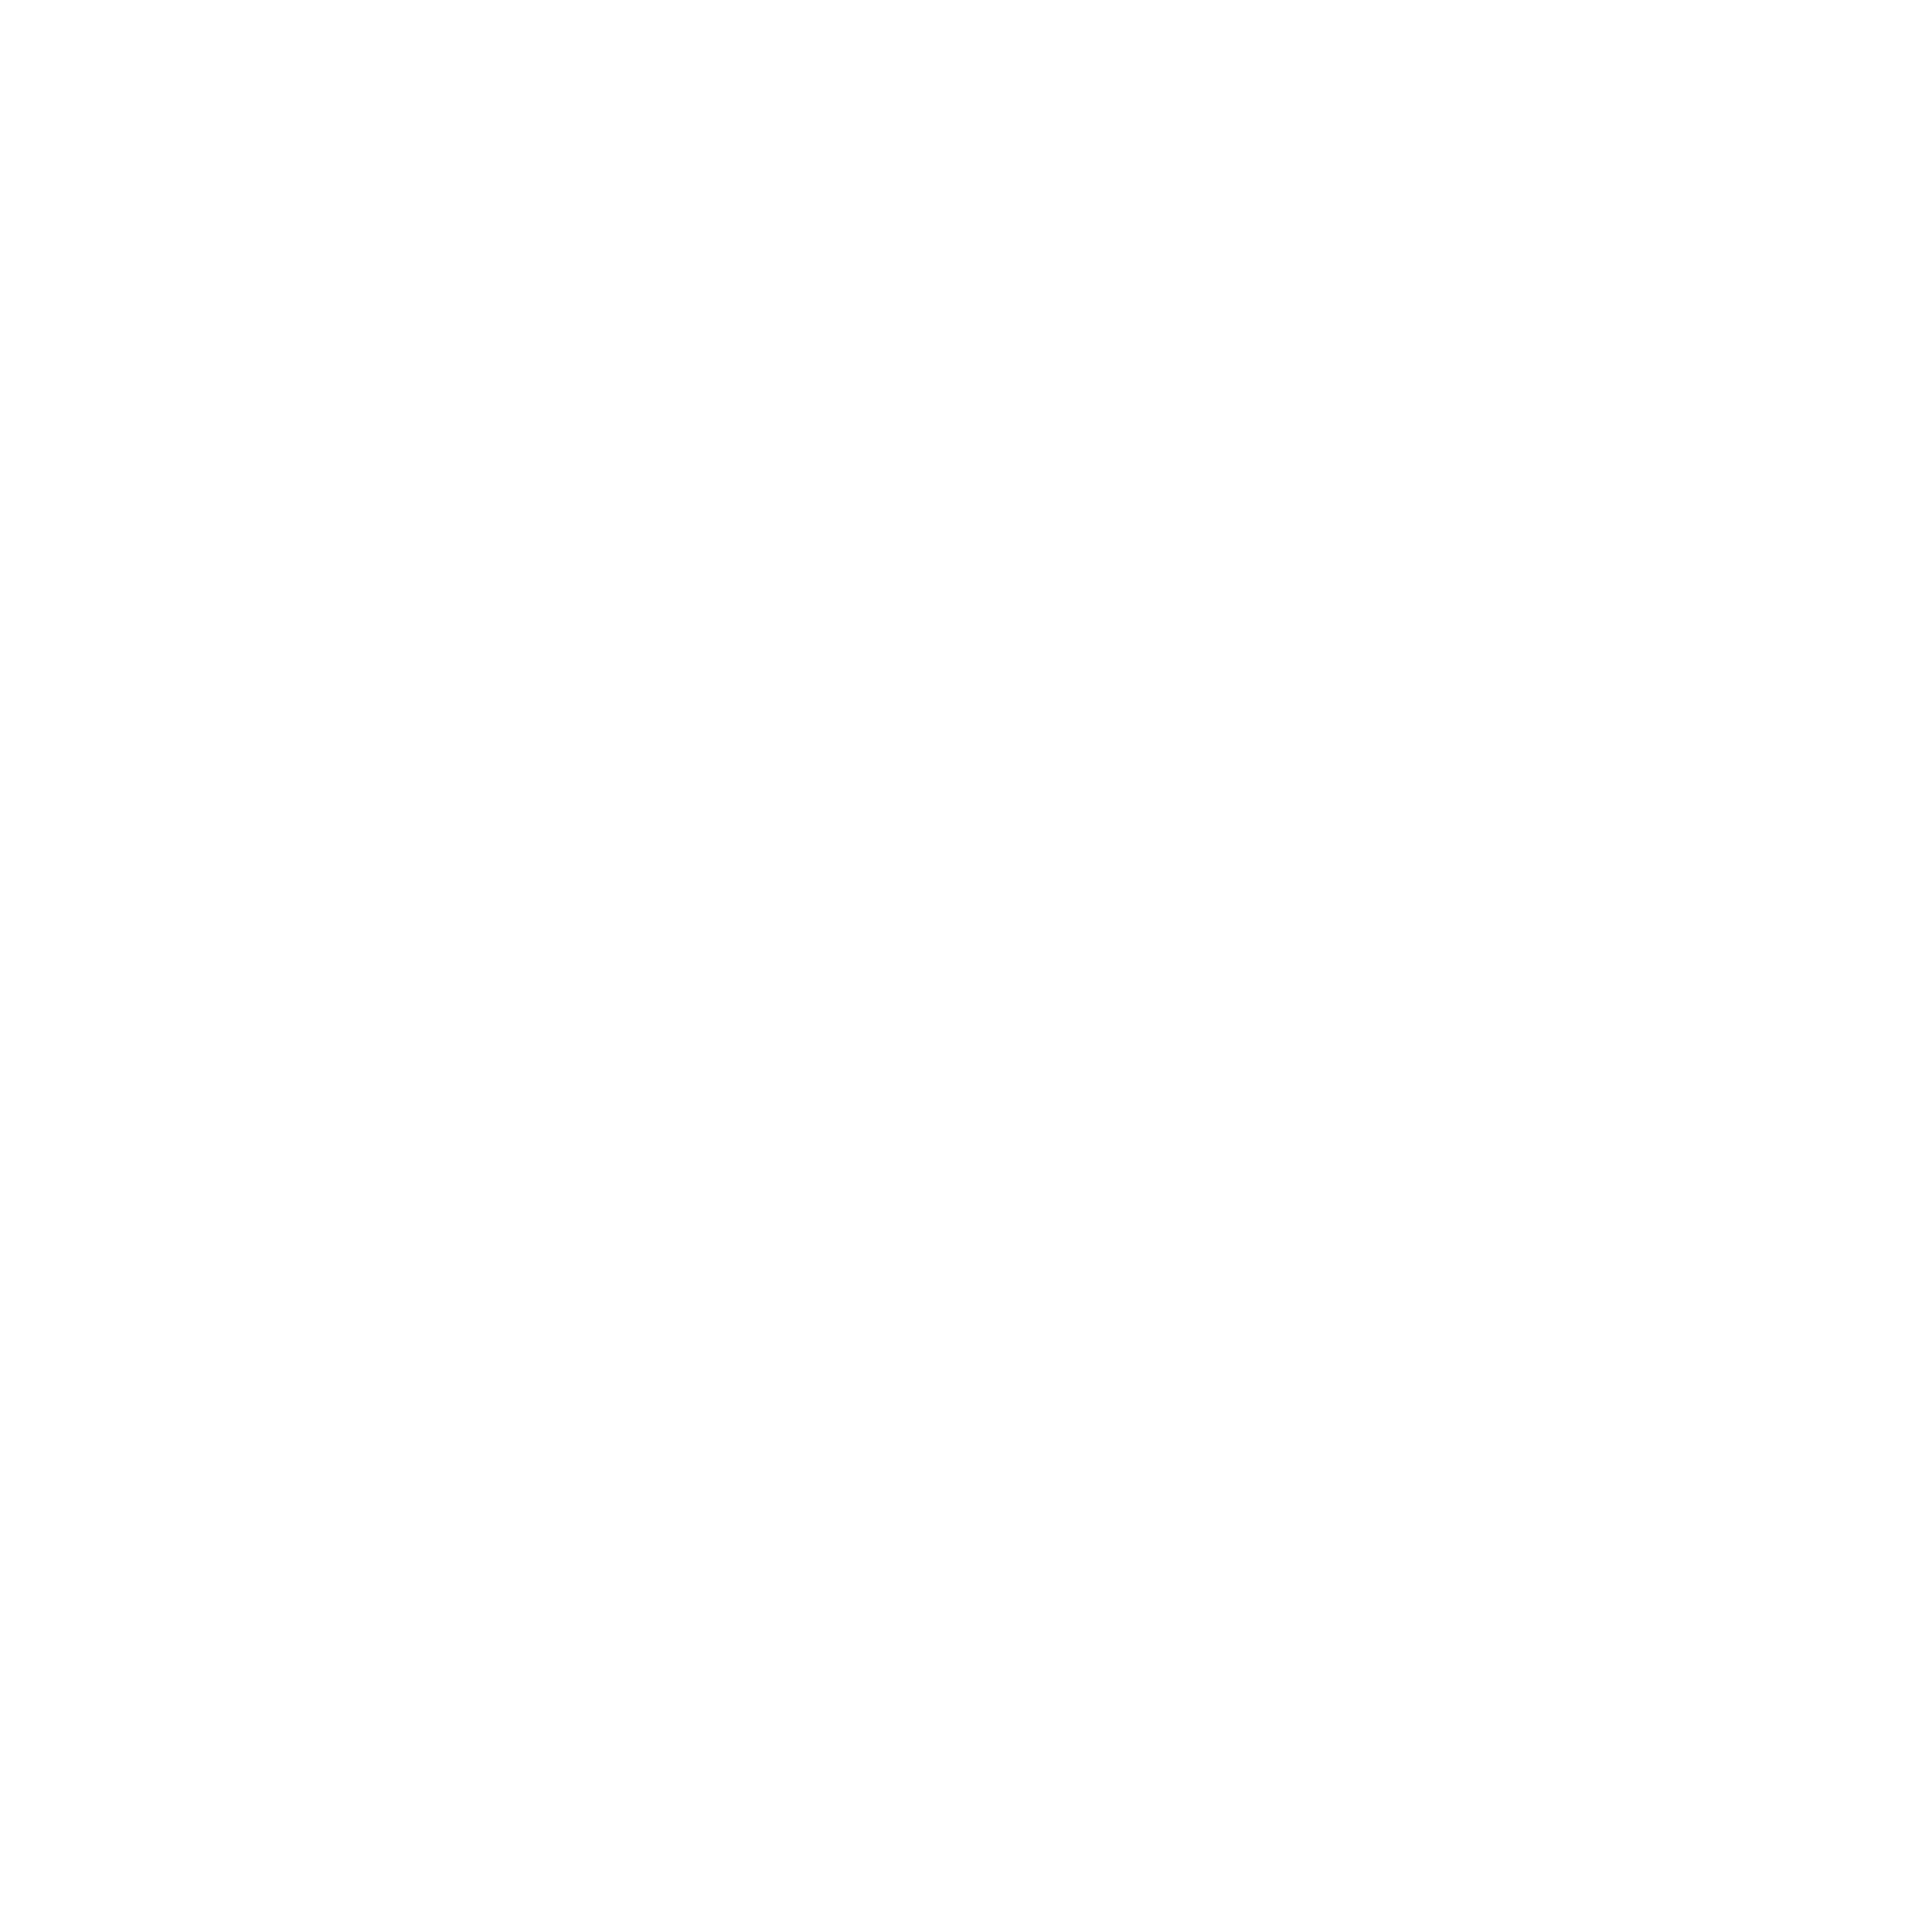 Plasma Visuals